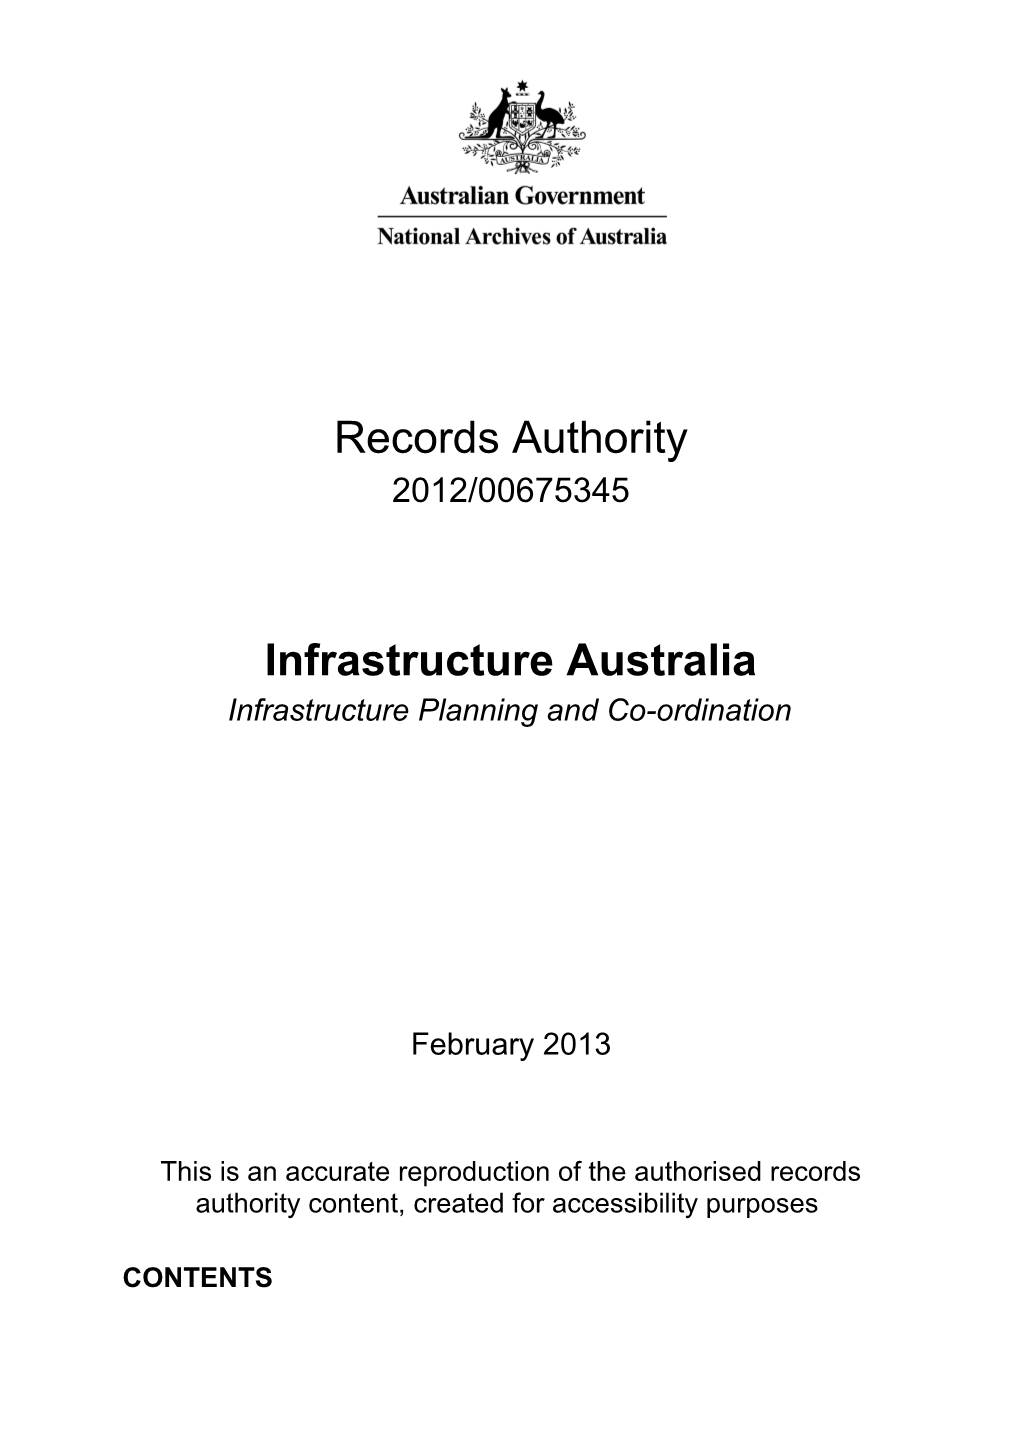 Infrastructure Australia Records Authority - 2012/00675345